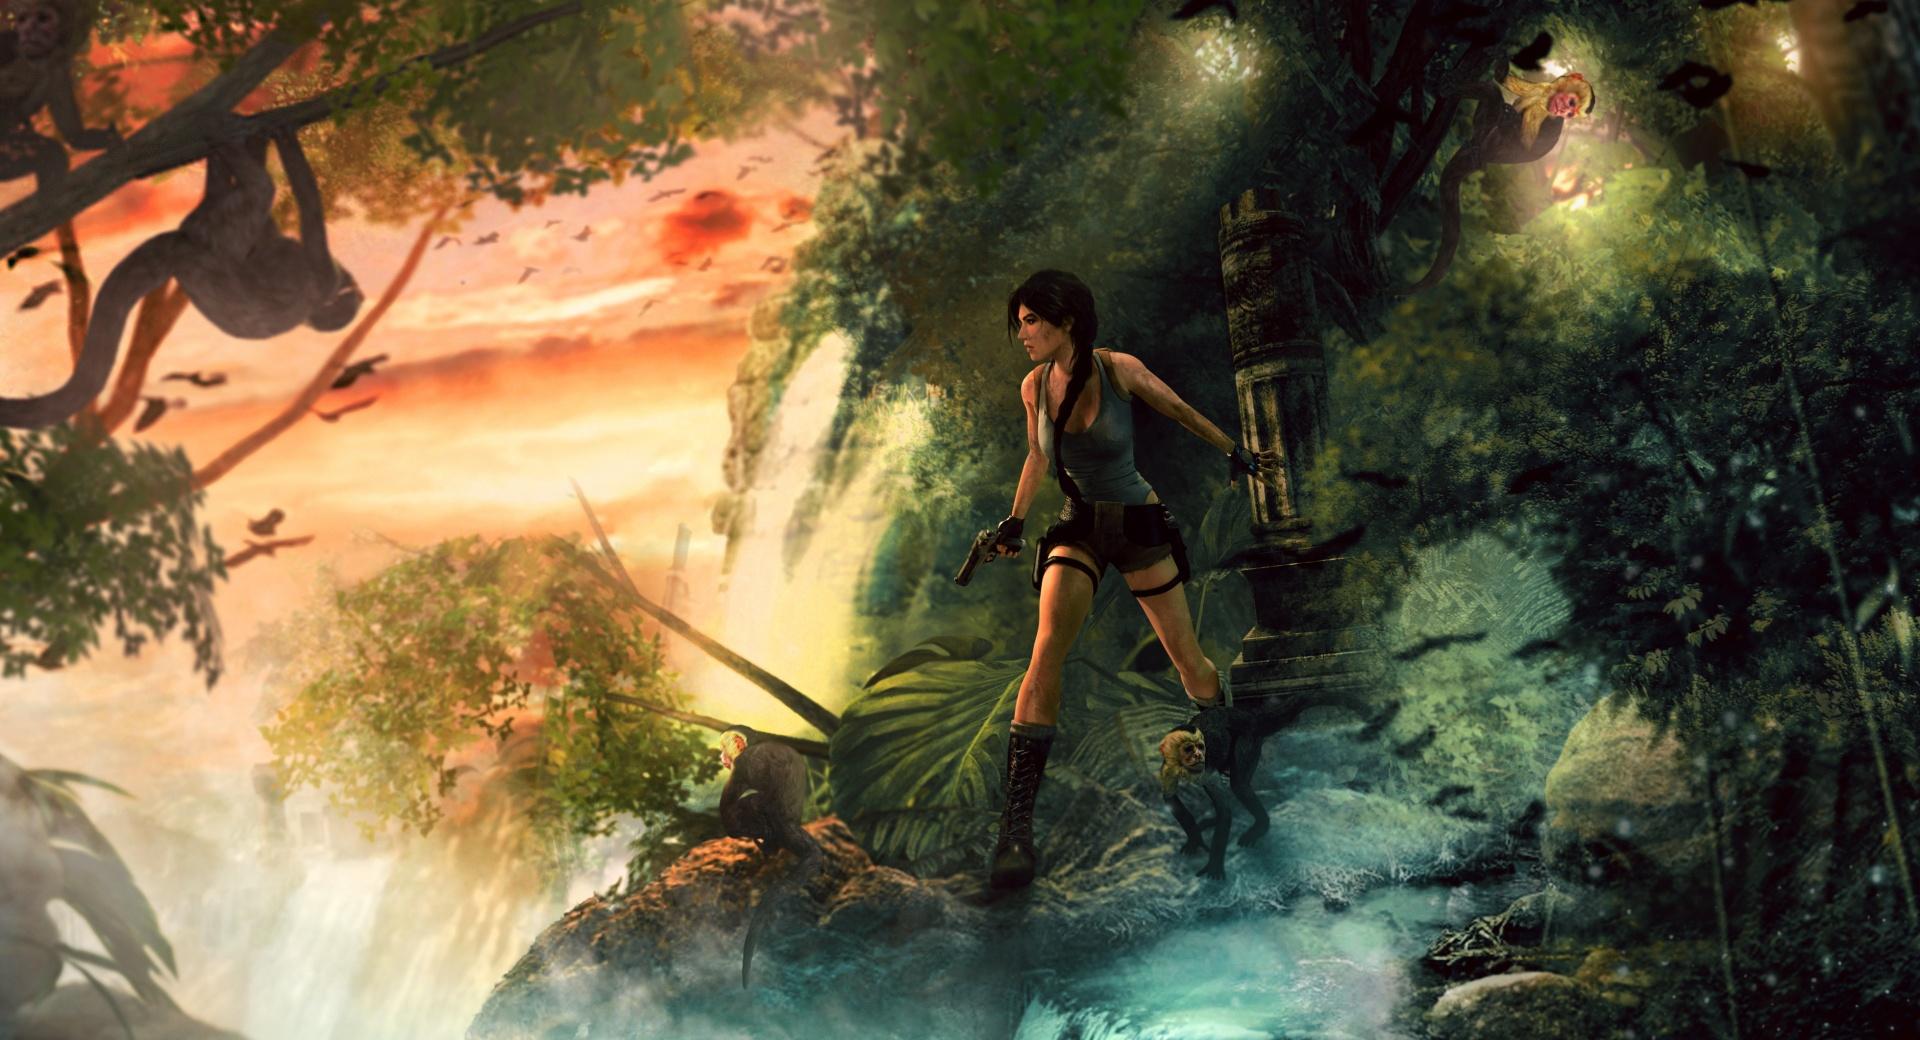 Lara Croft Jungle at 1024 x 1024 iPad size wallpapers HD quality